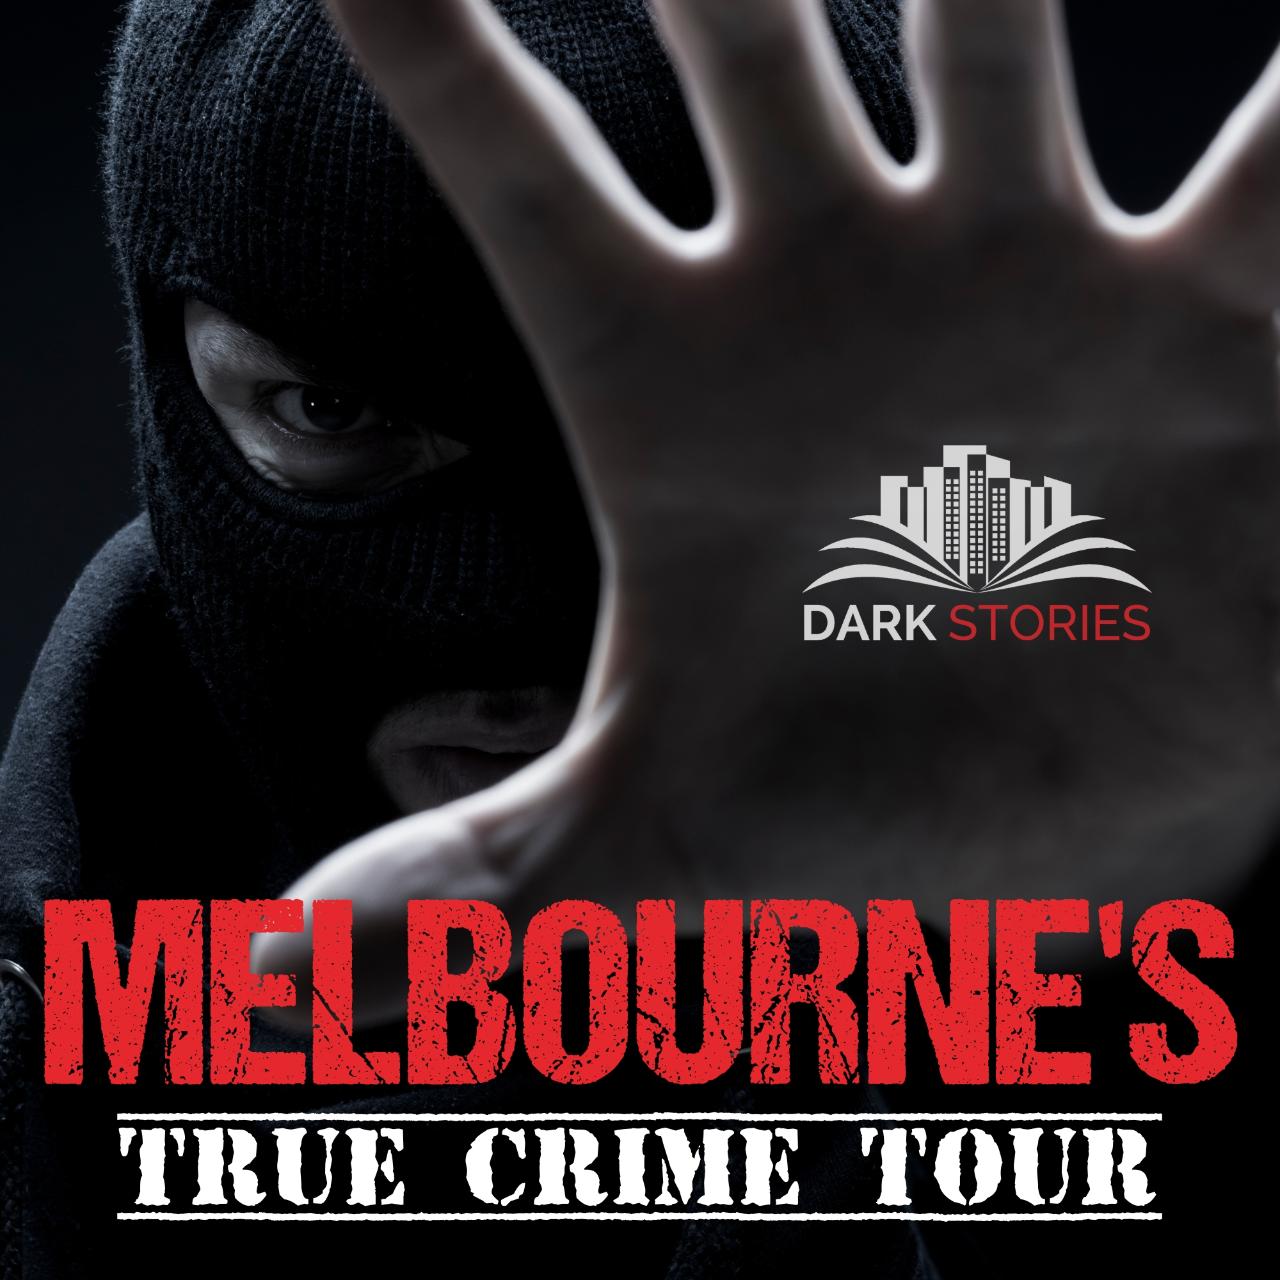 Melbourne's - True Crime Tour